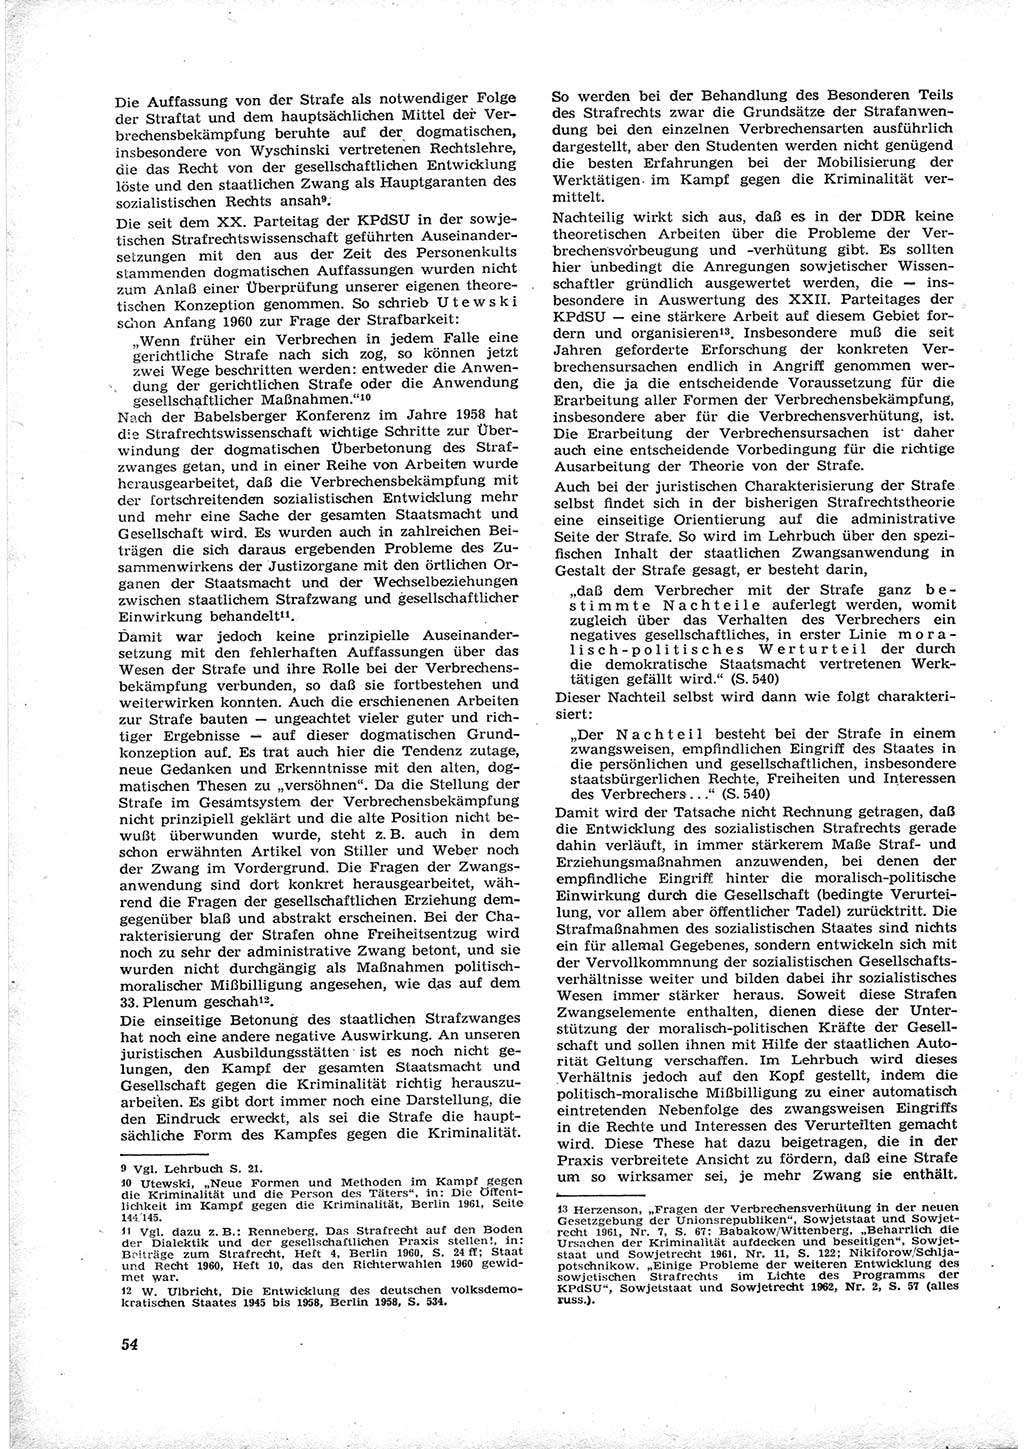 Neue Justiz (NJ), Zeitschrift für Recht und Rechtswissenschaft [Deutsche Demokratische Republik (DDR)], 17. Jahrgang 1963, Seite 54 (NJ DDR 1963, S. 54)